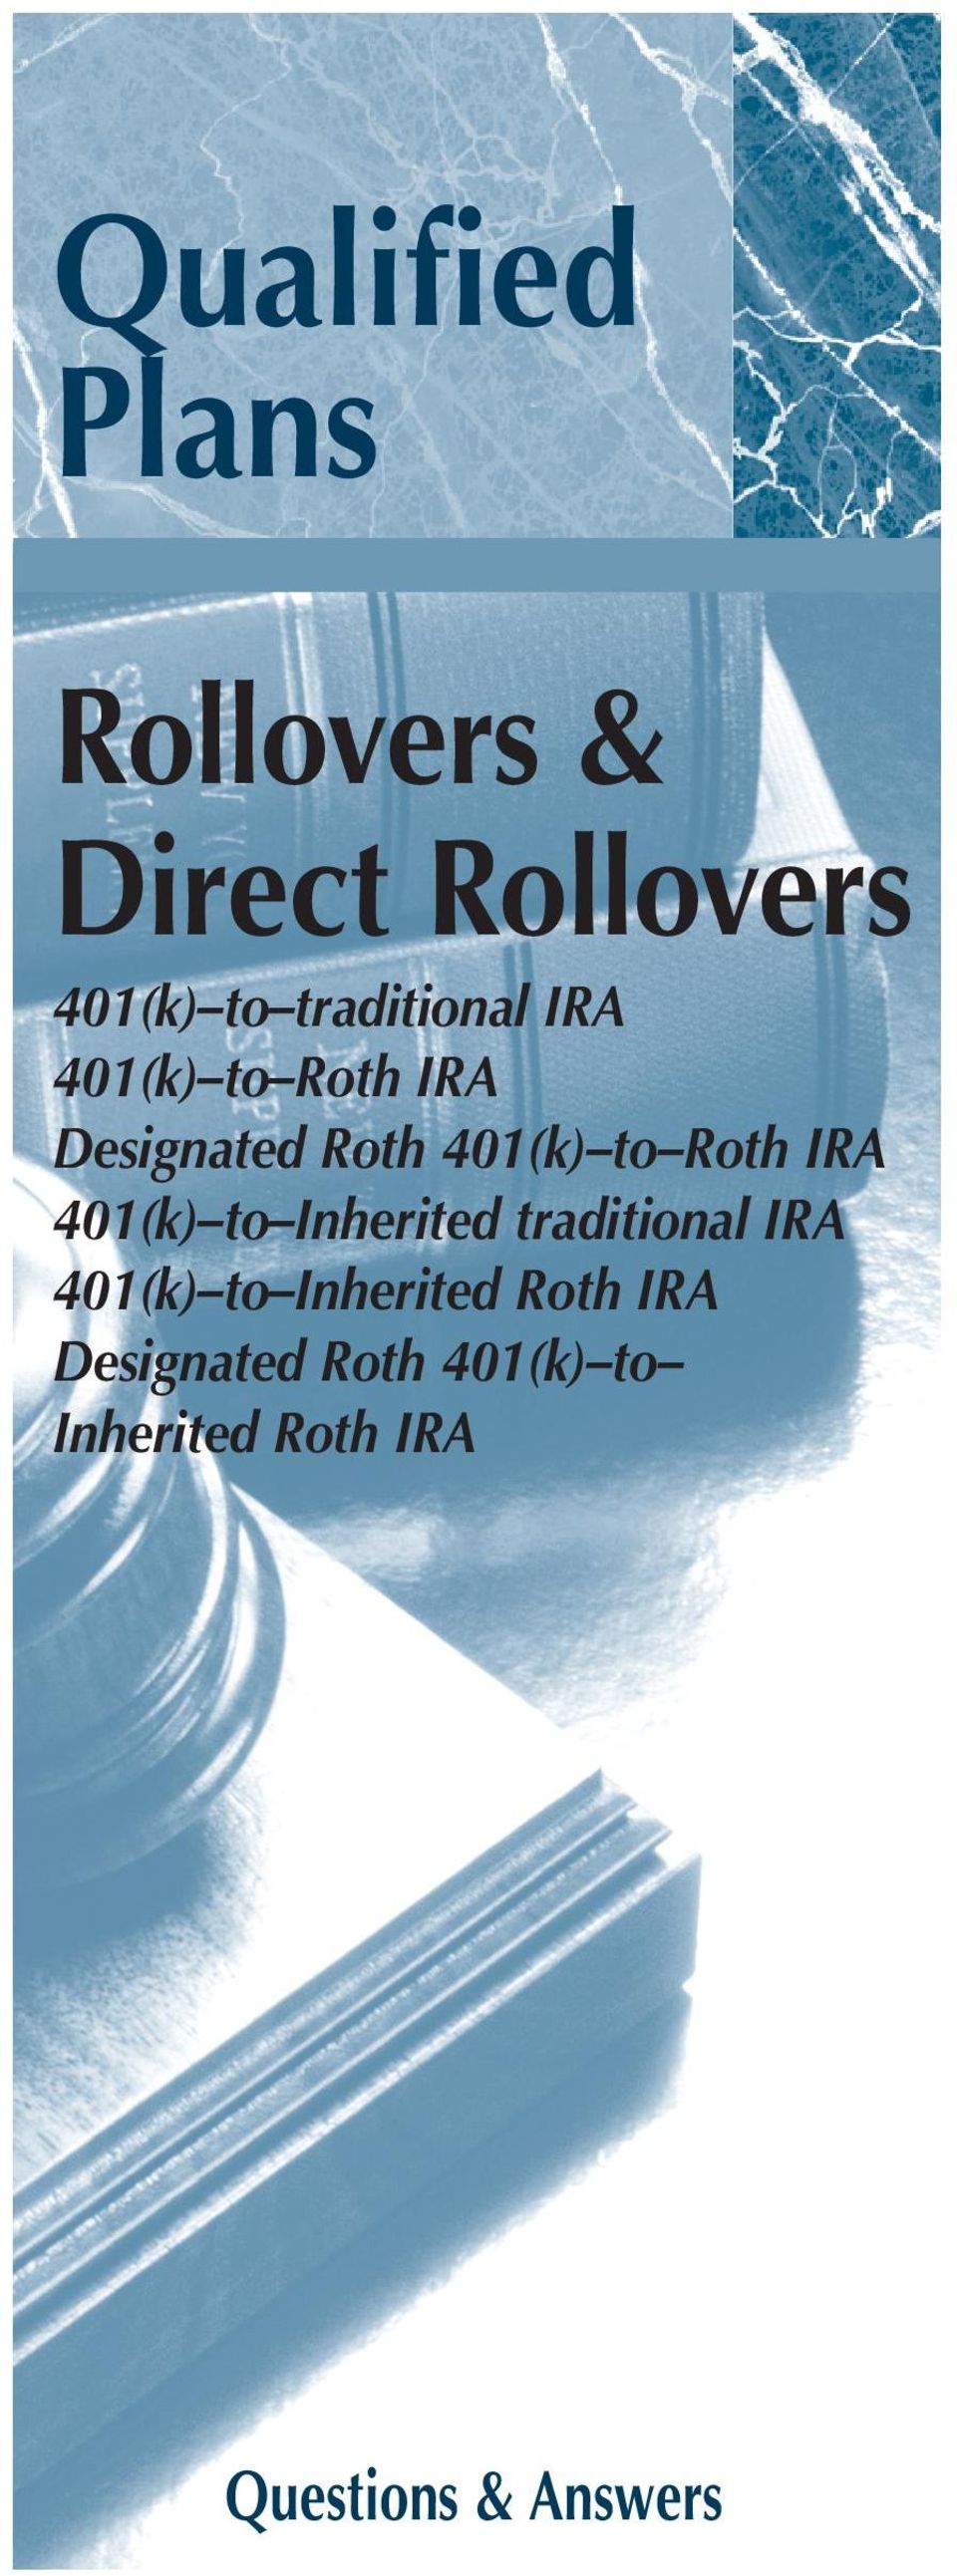 Roth IRA 401(k) to Inherited traditional IRA 401(k) to